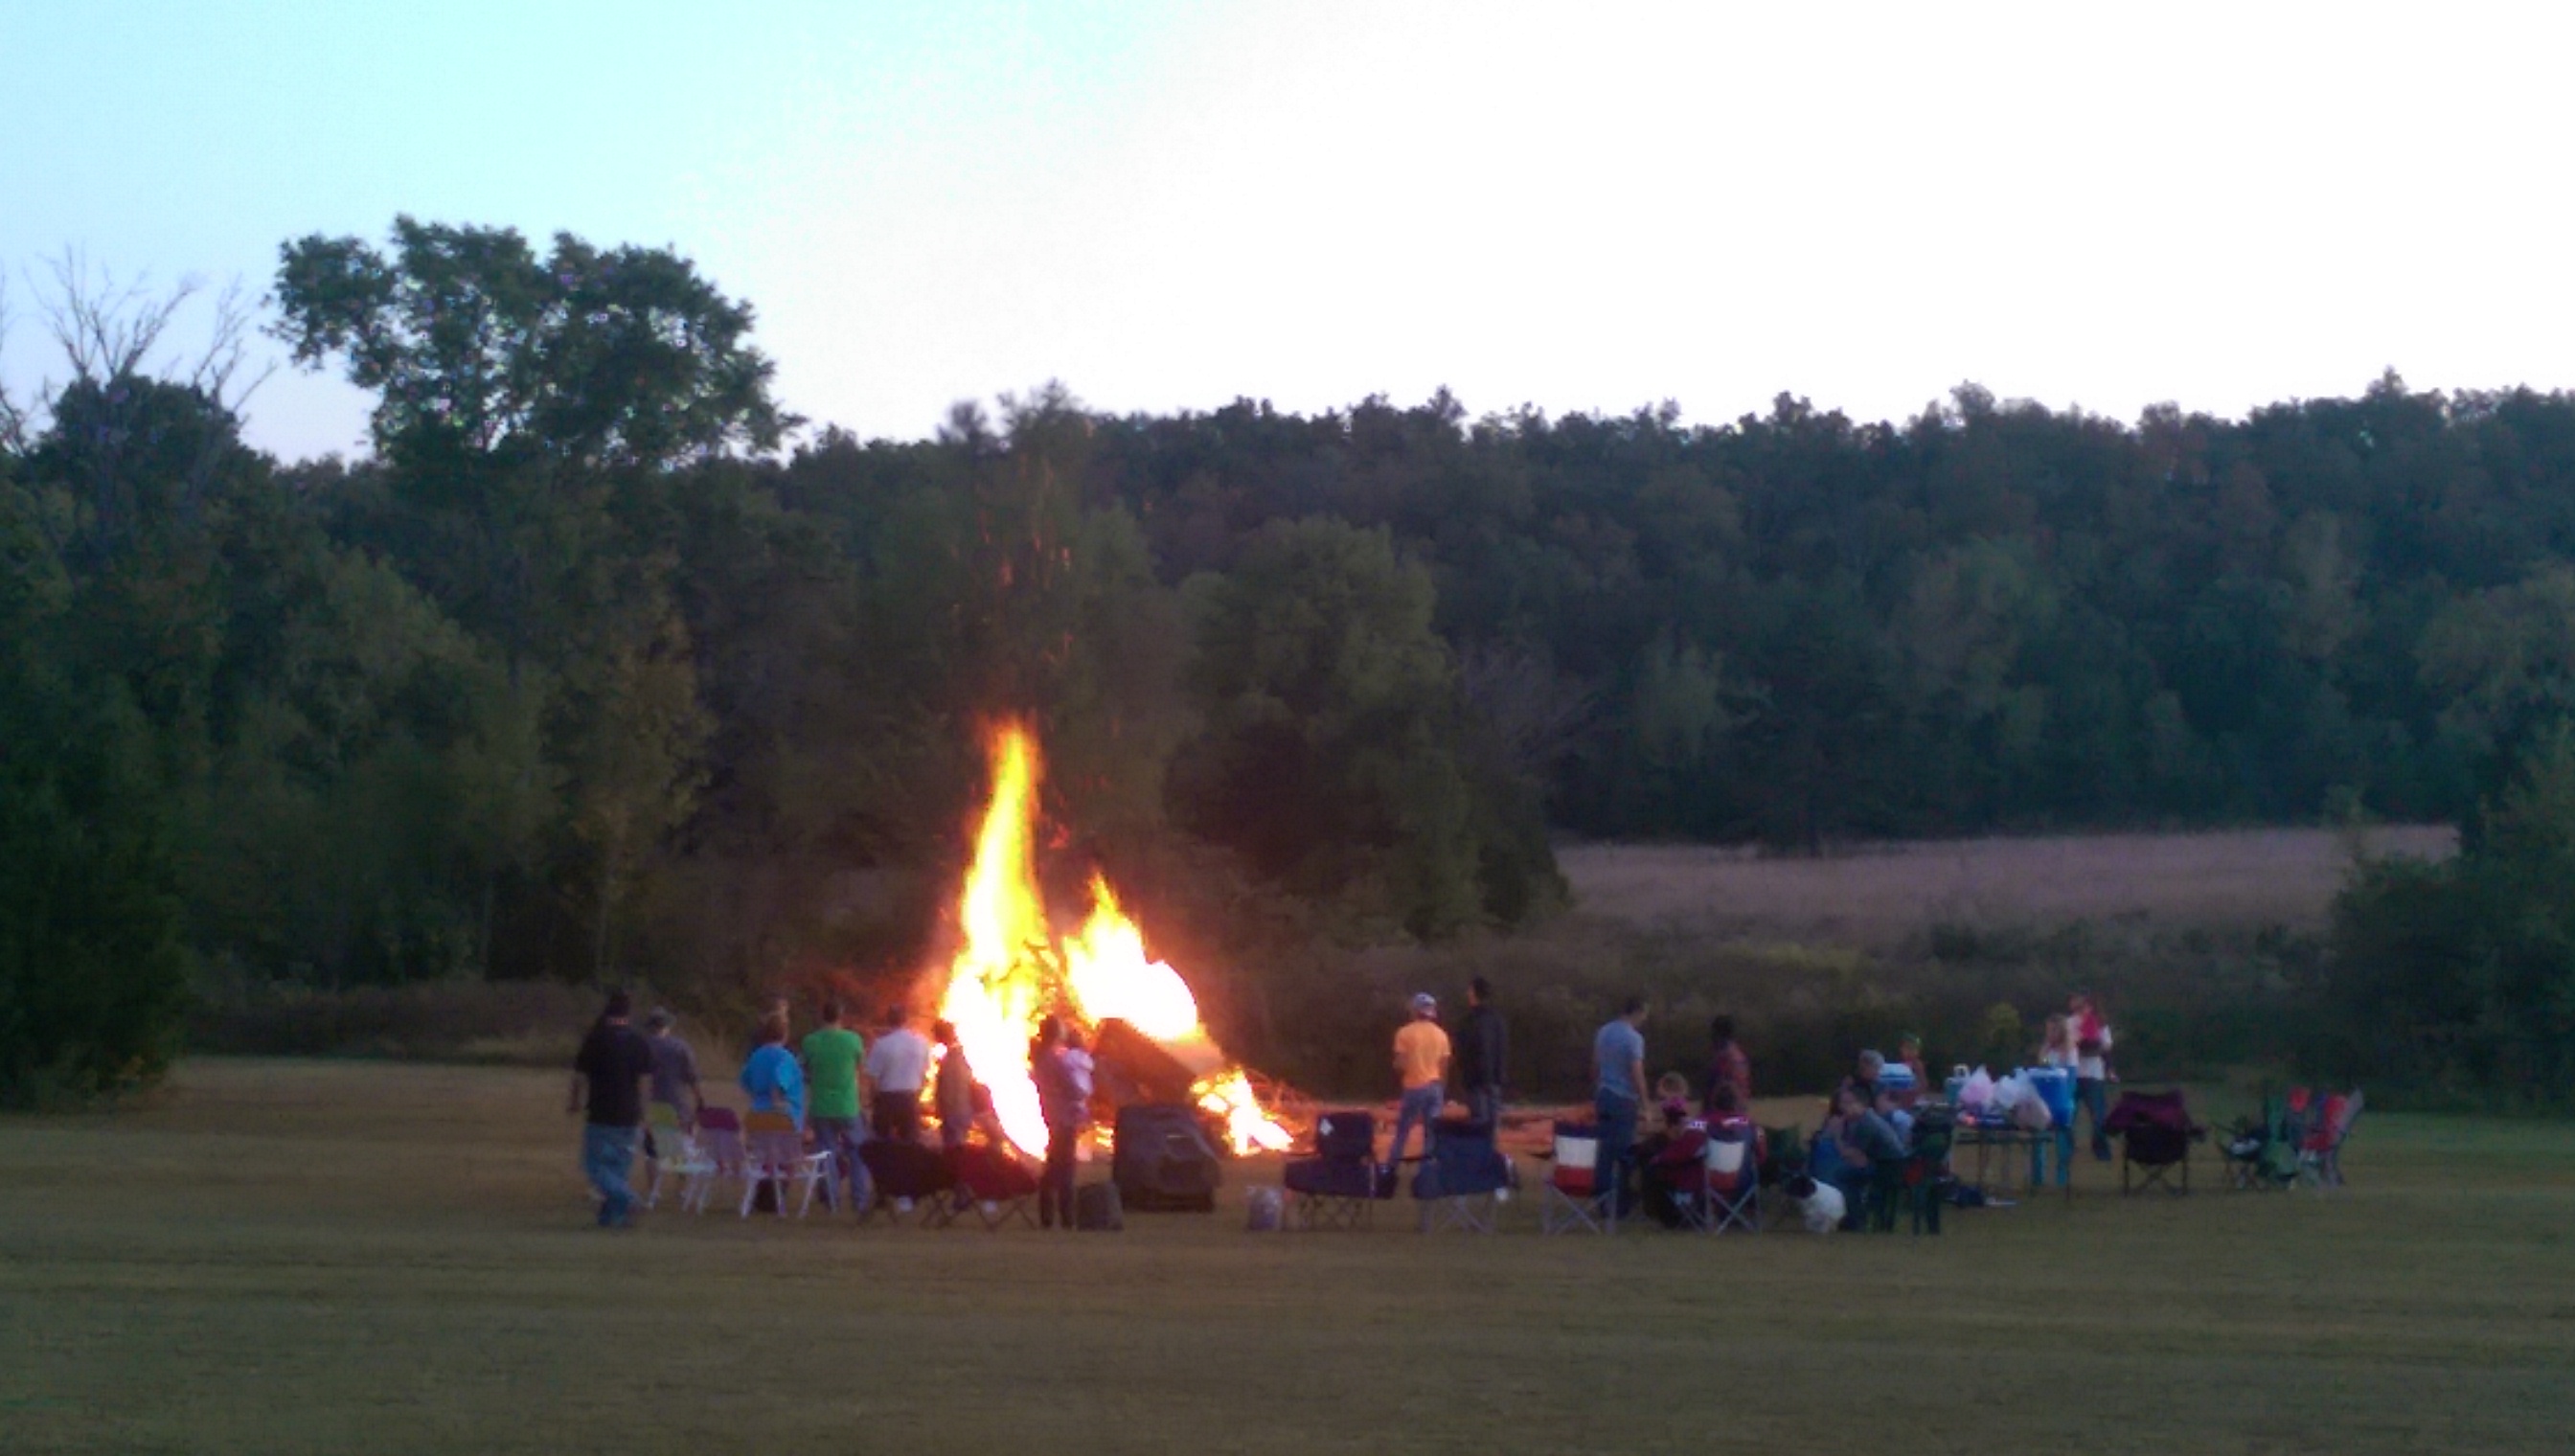 onfire Party，即篝火晚会。这张图是在篝火烧的最旺的时候拍到的，感觉在30 ft开外都能感受到热量